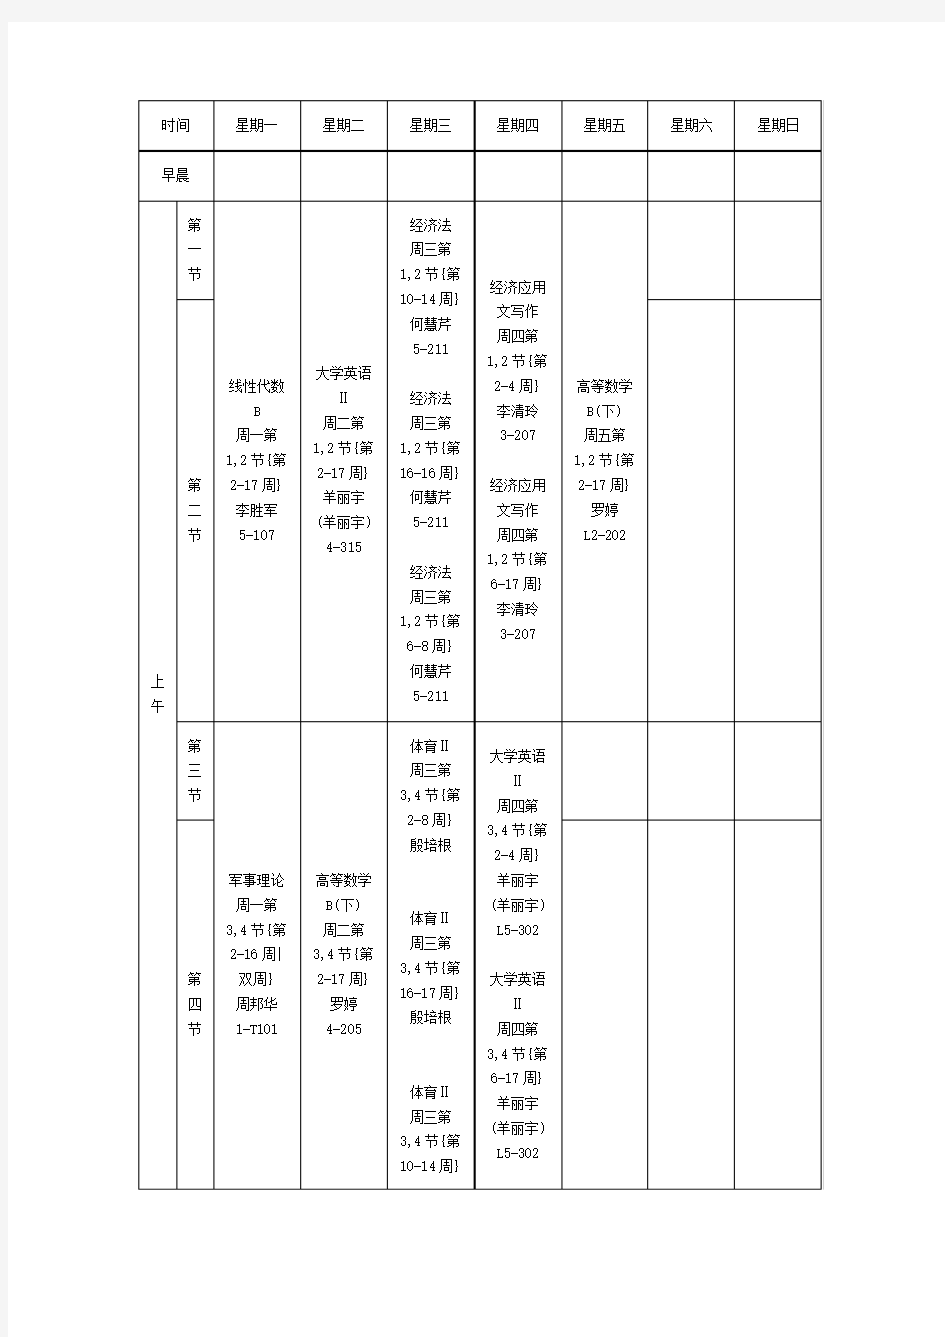 海南大学2012级物流管理(下)课表